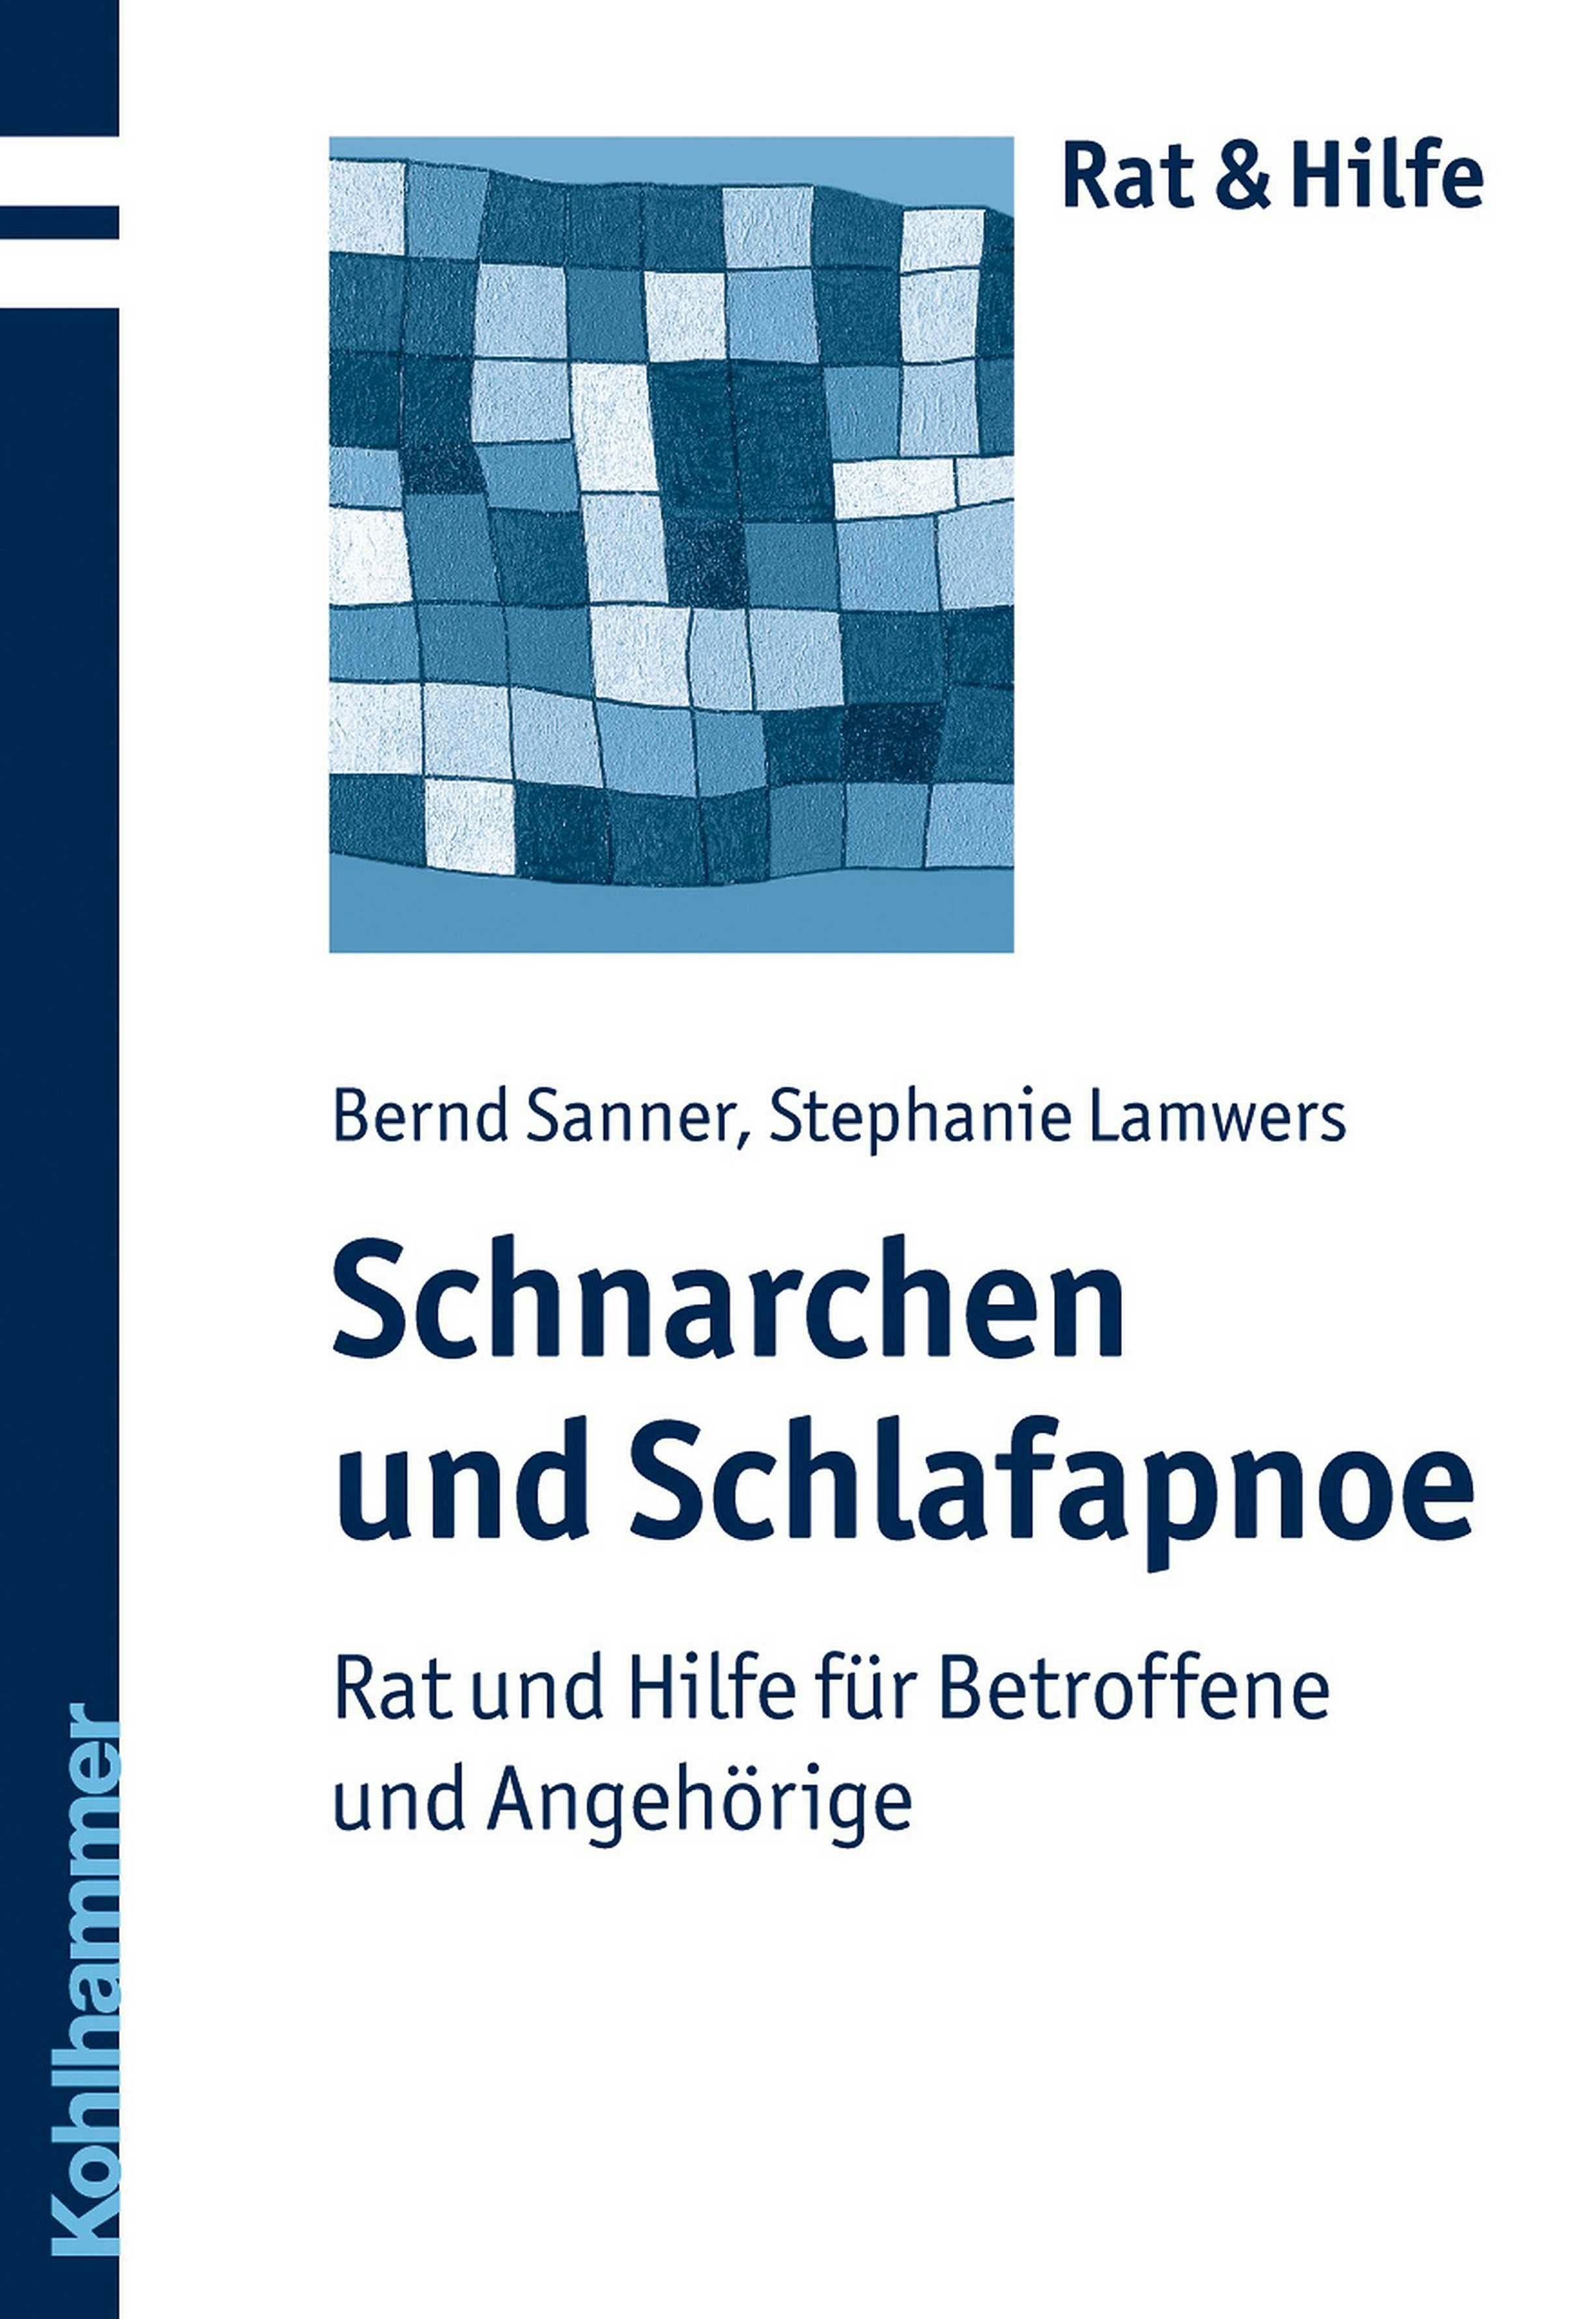 Schnarchen und Schlafapnoe: Rat und Hilfe für Betroffene und Angehörige - Stephanie Lamwers, Bernd Sanner